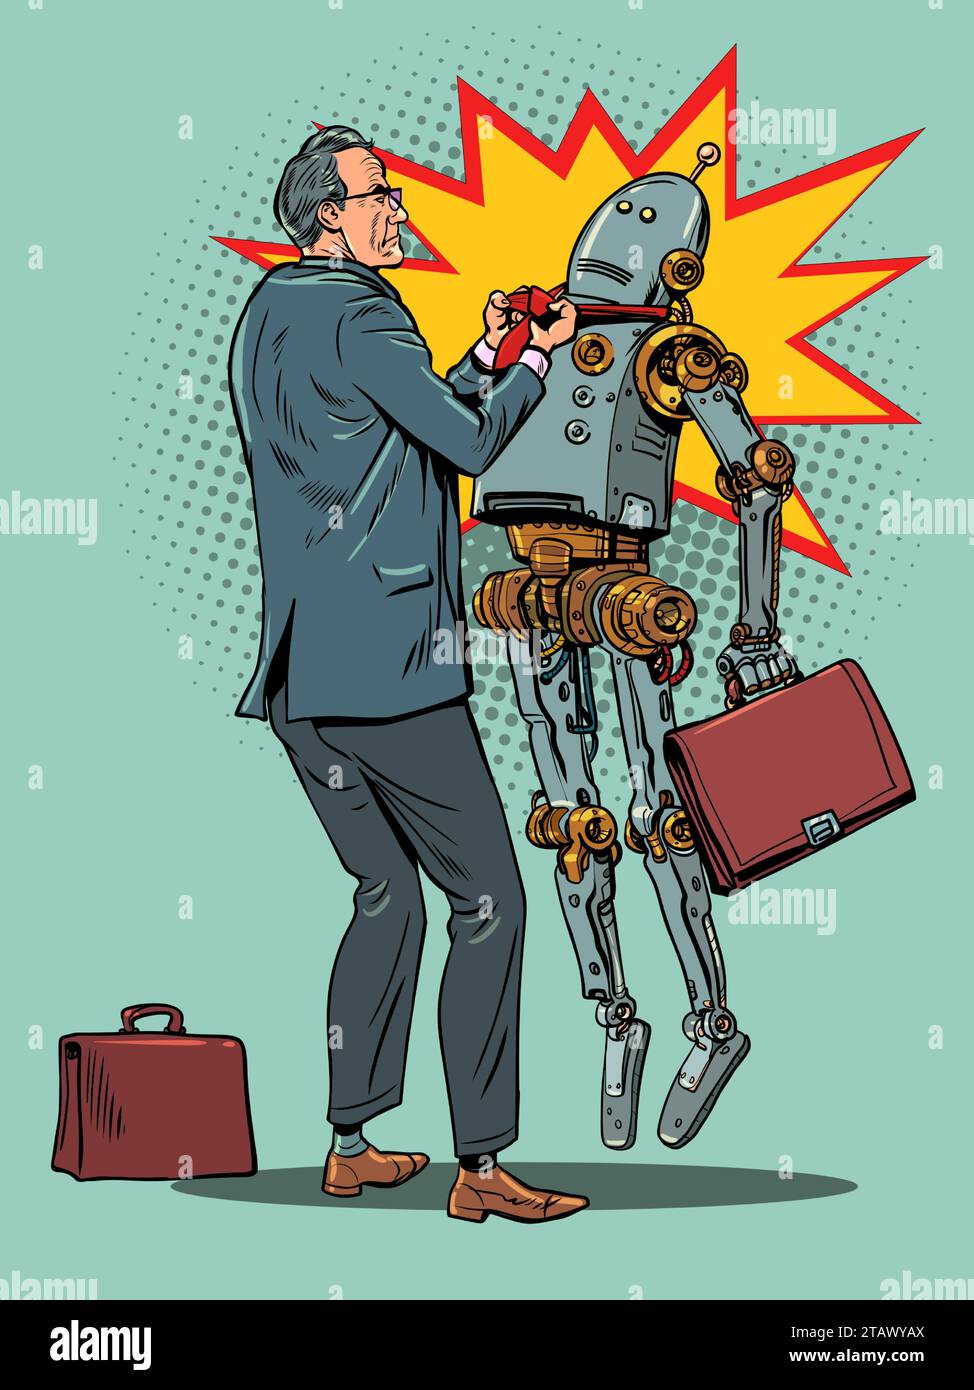 L'employé de bureau est insatisfait du travail du robot. Protester contre l'intelligence artificielle et la lutte contre elle. Le problème avec techn Illustration de Vecteur